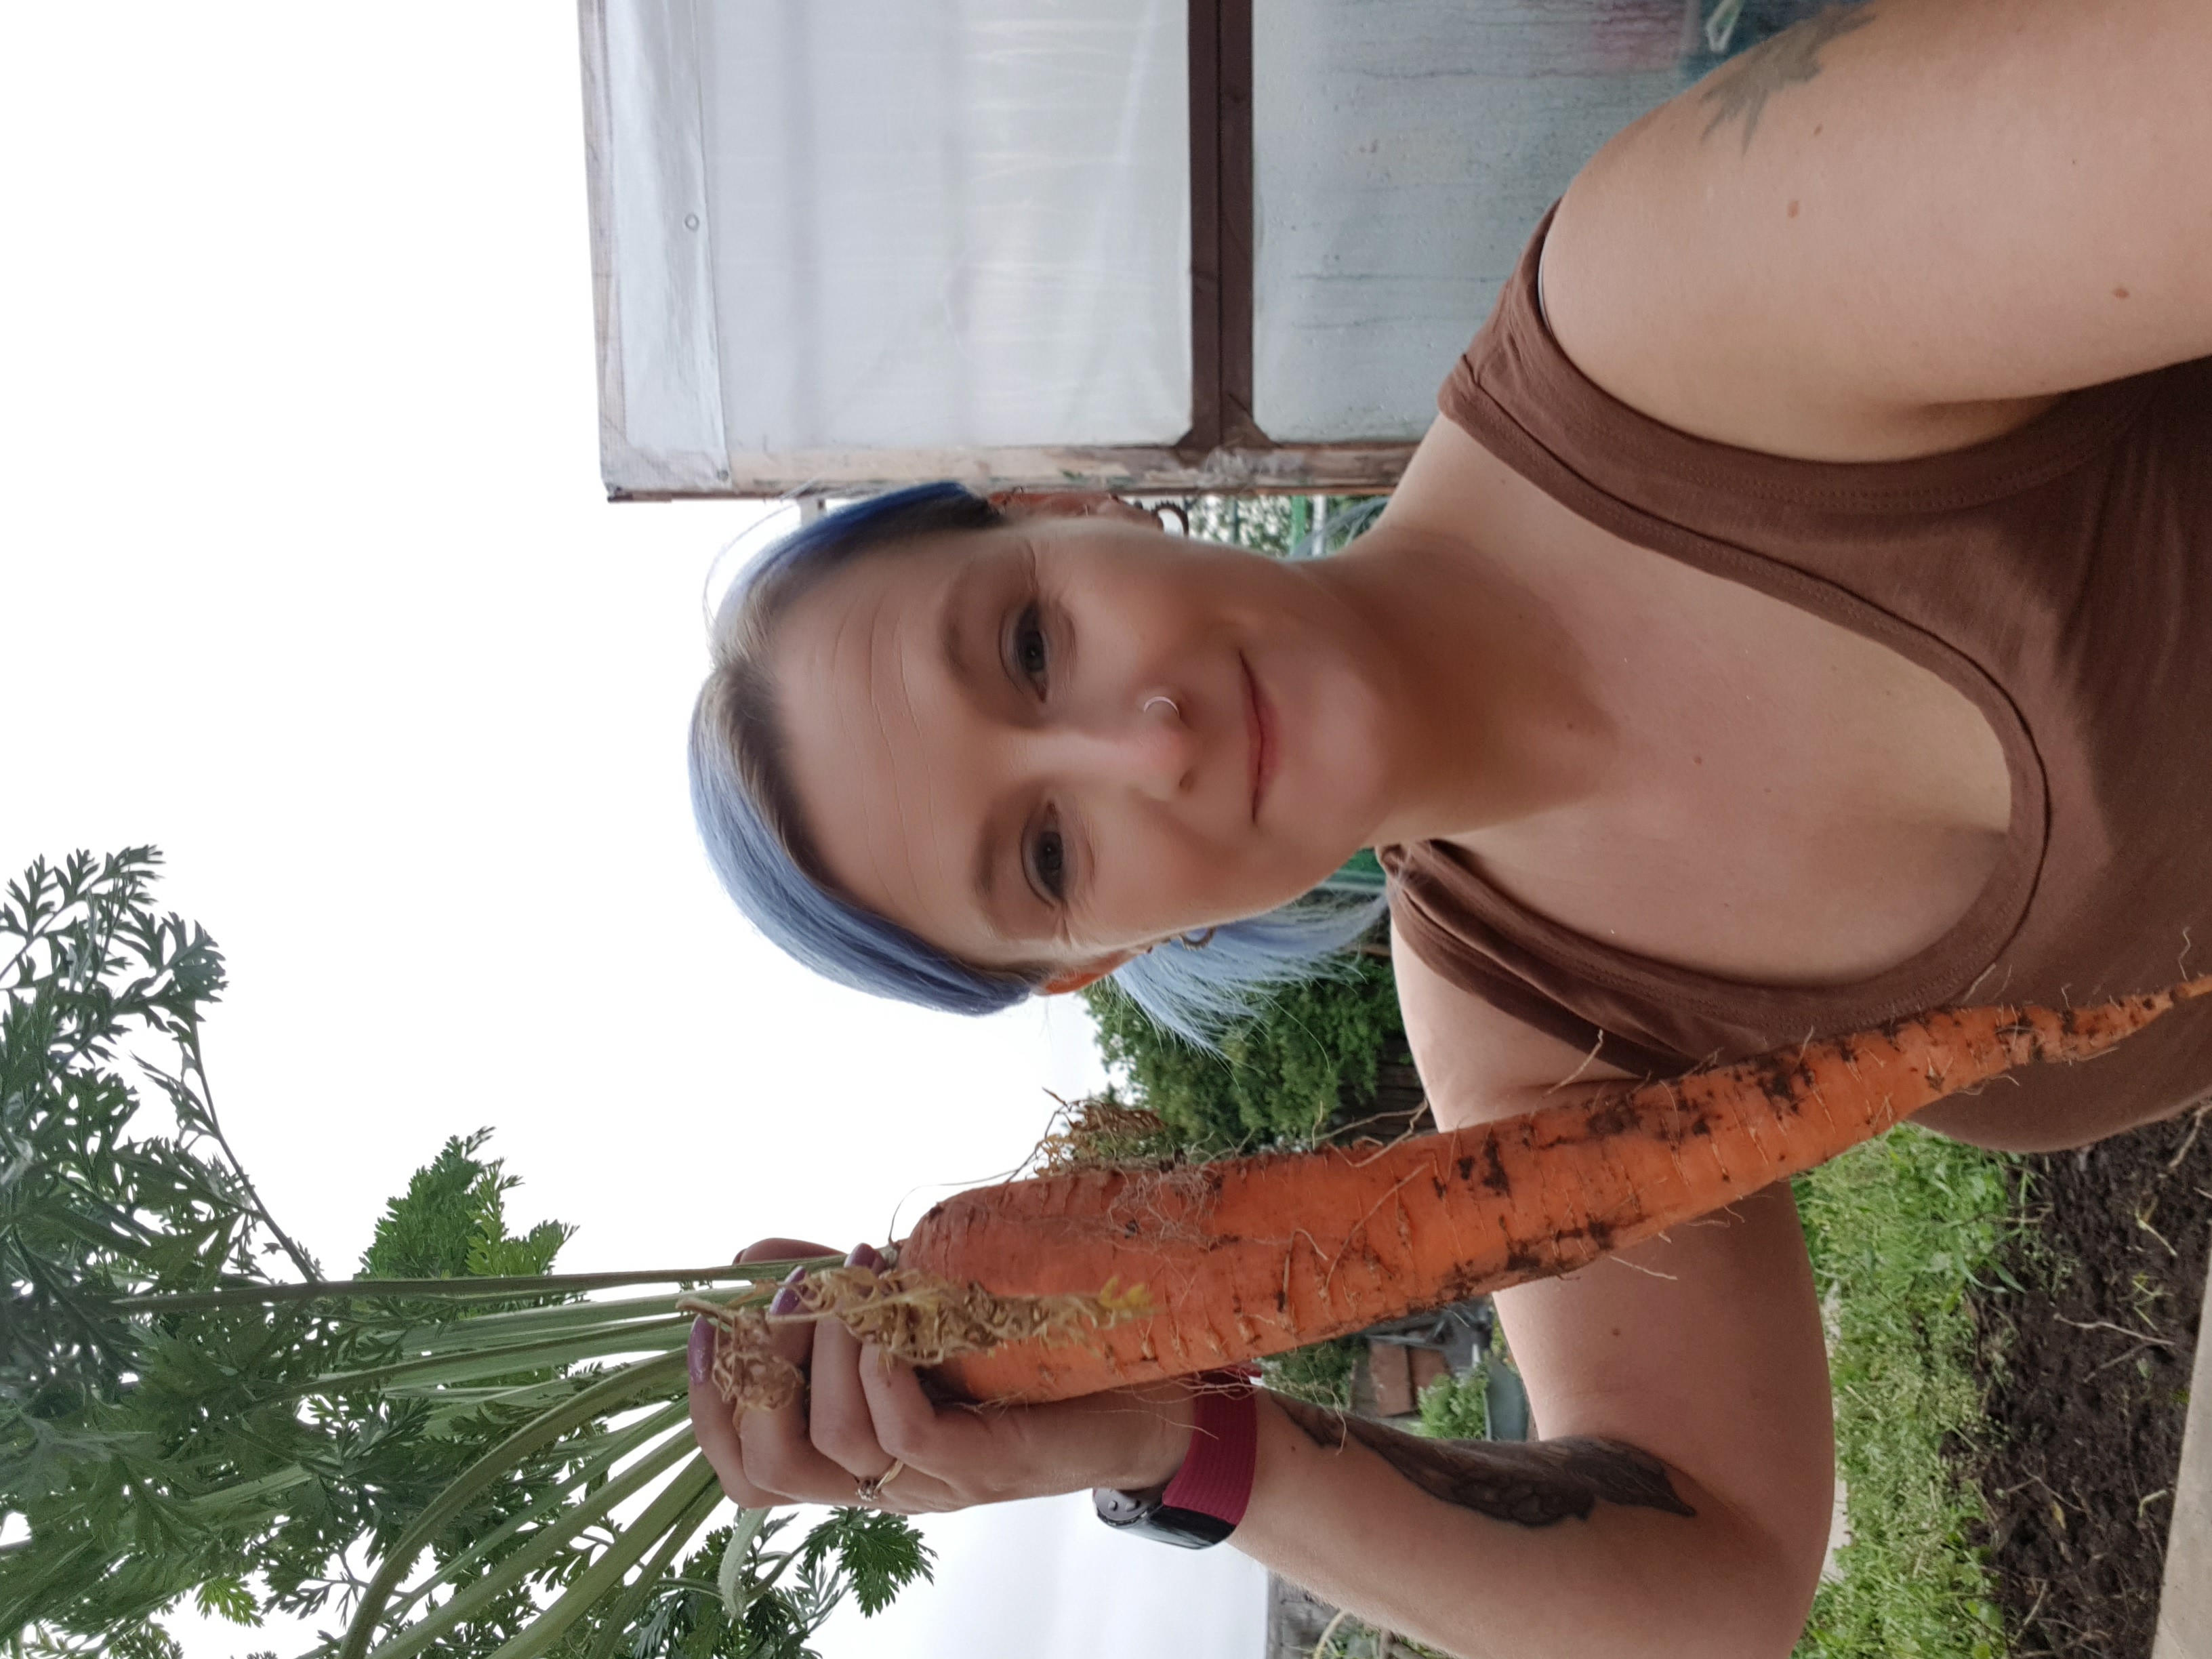 1 giant carrot